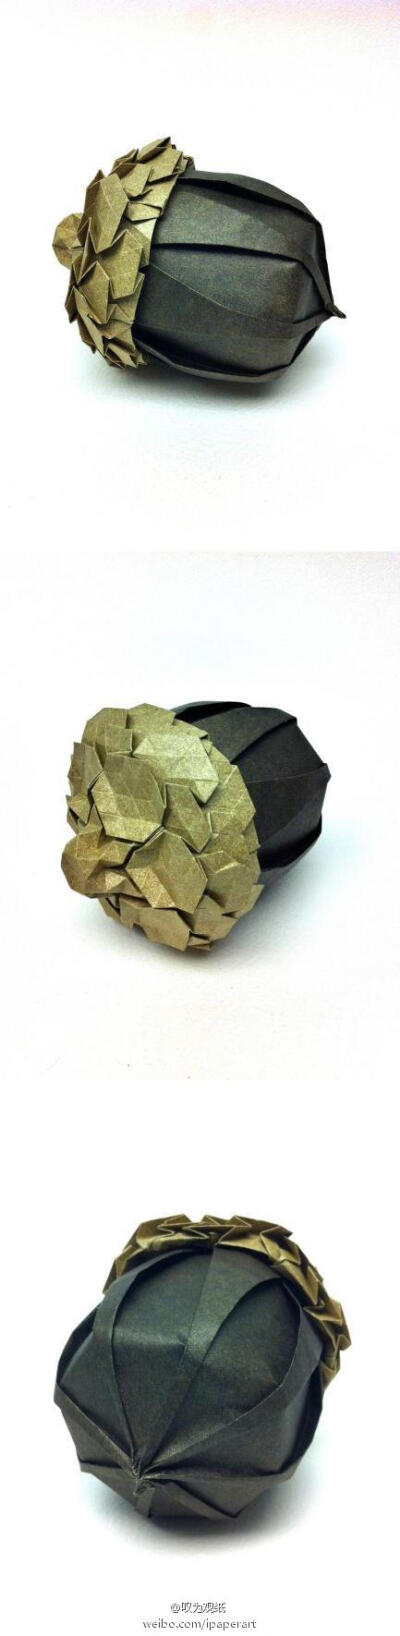 #折纸欣赏# Beth Johnson的橡果 ~这是一个组合作品,由2张纸组成,黑色线条优美的橡果身,加上用图案折的手法折出花纹的橡果"帽子",使得这个作品看起来简洁而又布满细节~